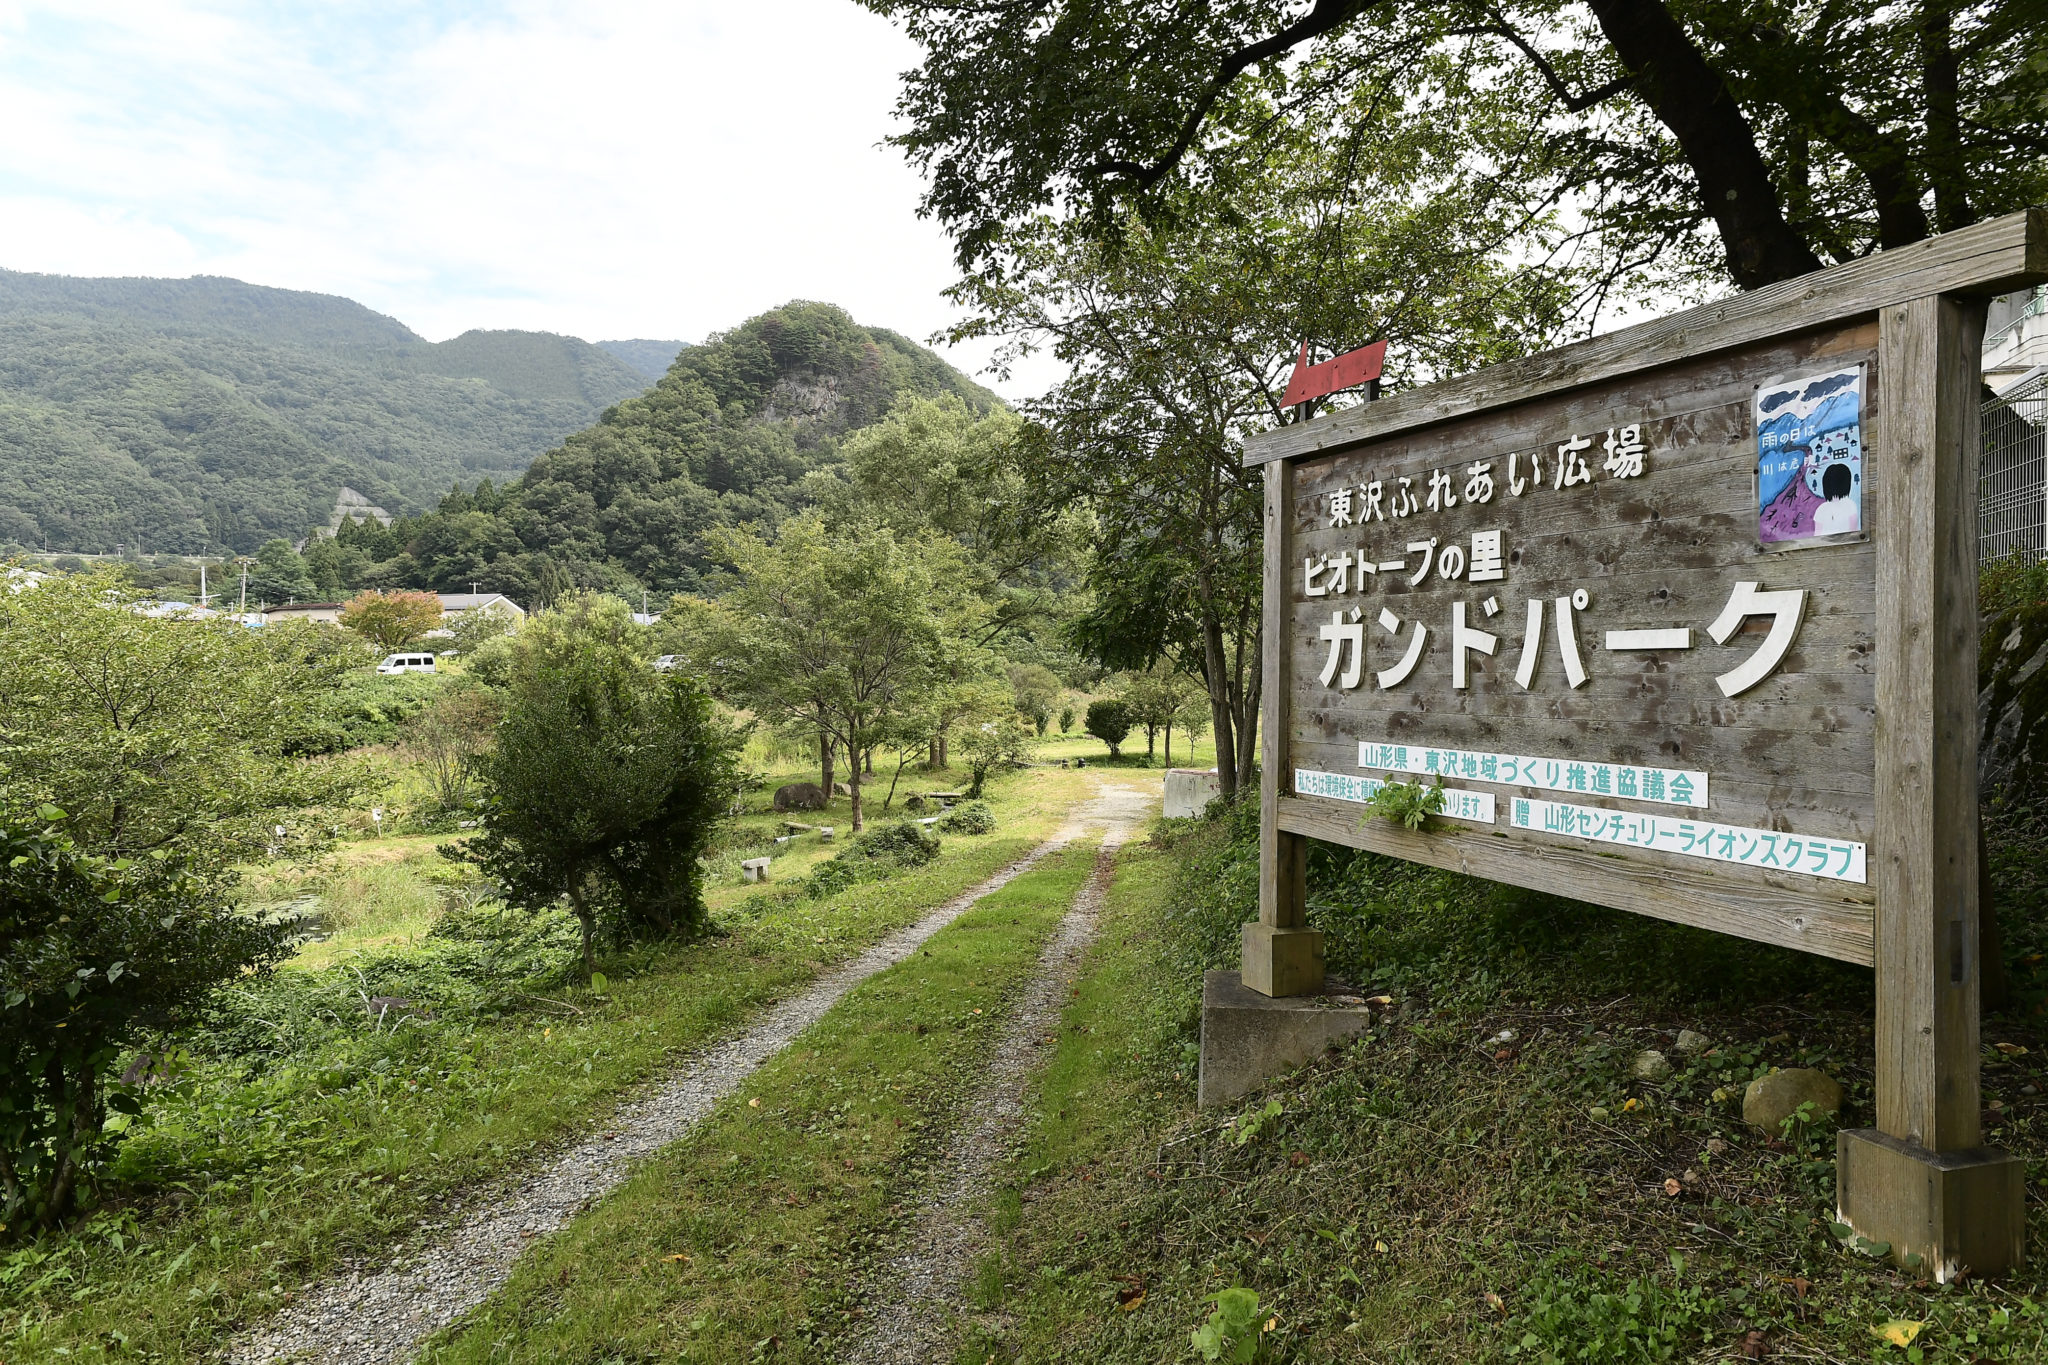 Biotope Nosato Gund Park